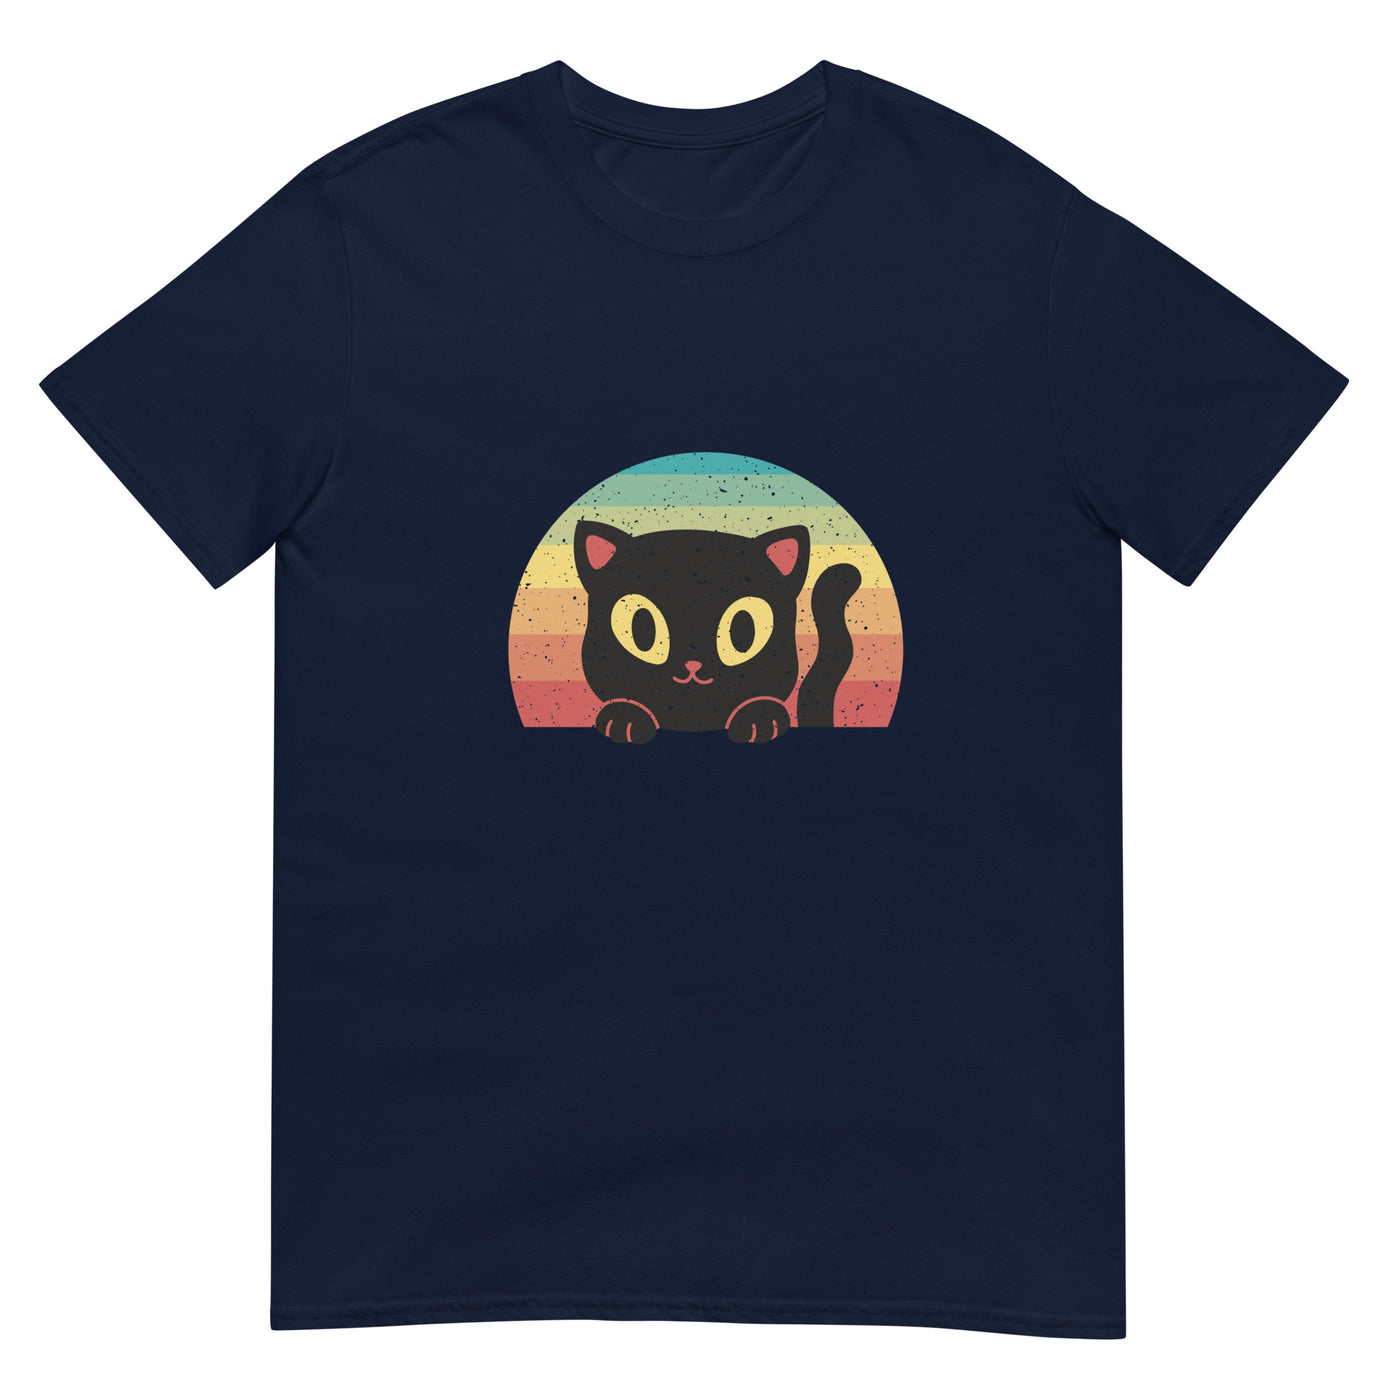 Retro mit Sonne und Katze - Herren T-Shirt Other_Niches xxx yyy zzz Navy